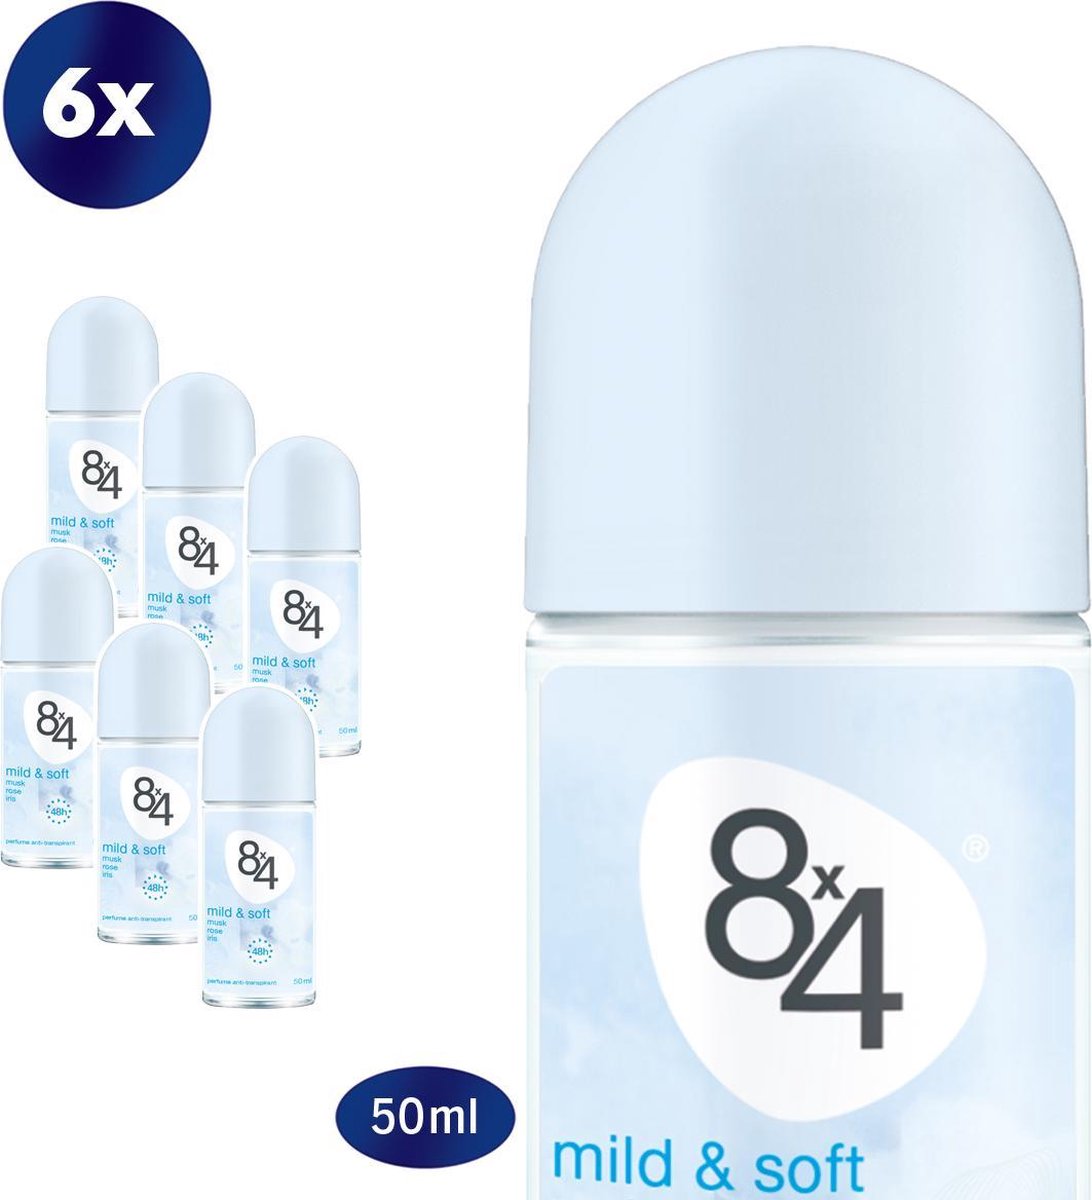 8x4 Mild & Soft - 6 x 50 ml - Voordeelverpakking - Deodorant Roller